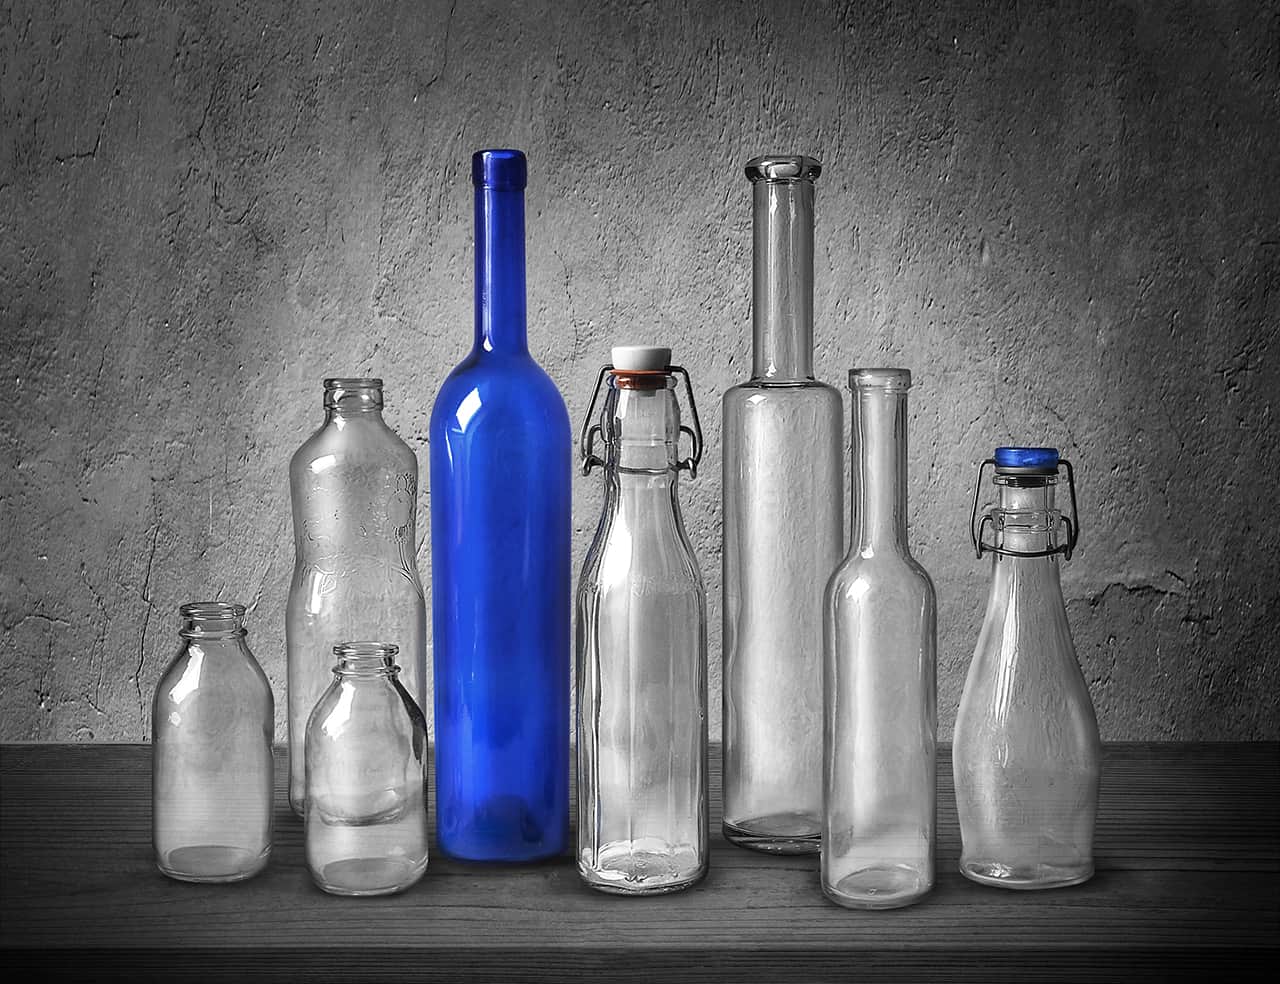 Bodo Kühle, „Blue Bottles“, Olympus OM-D E-M1